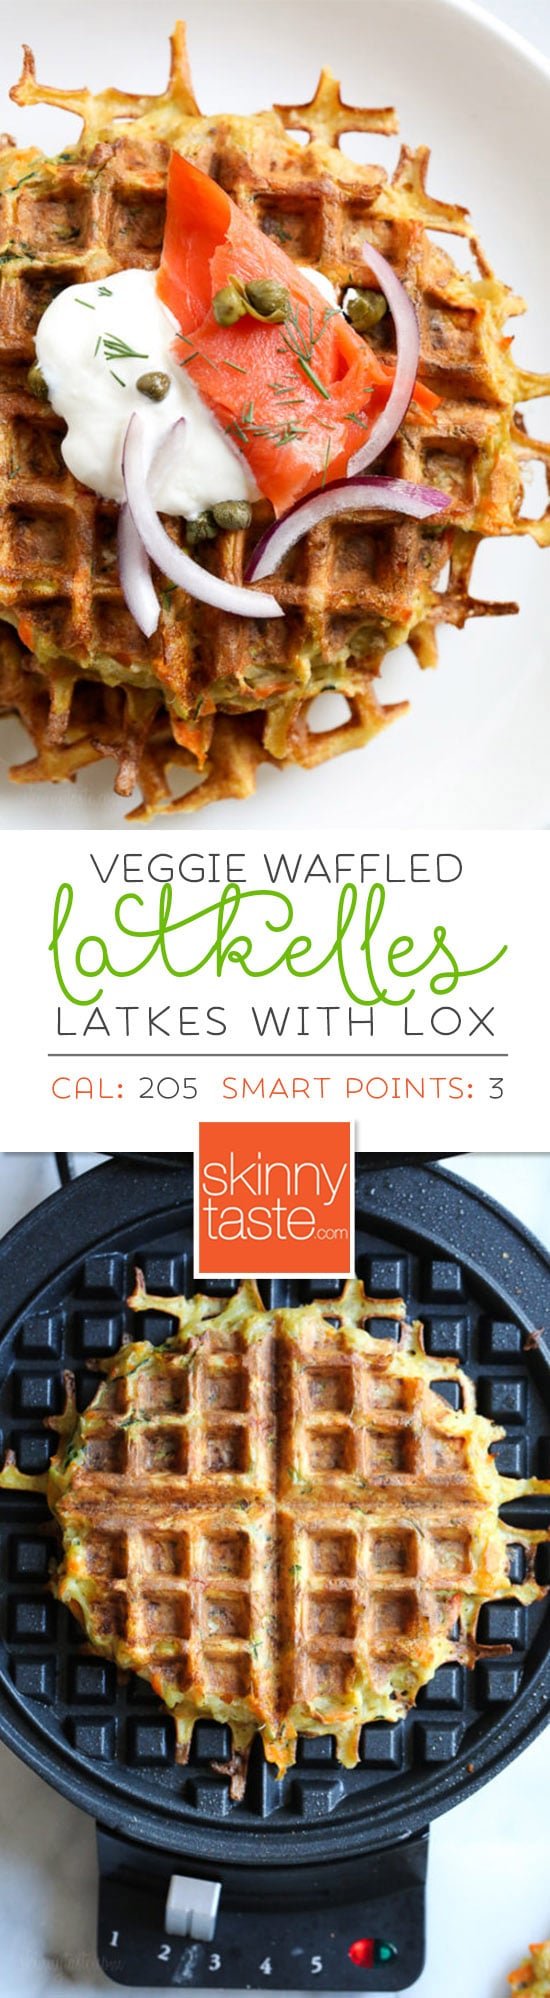 Waffled Vegetable Latkes